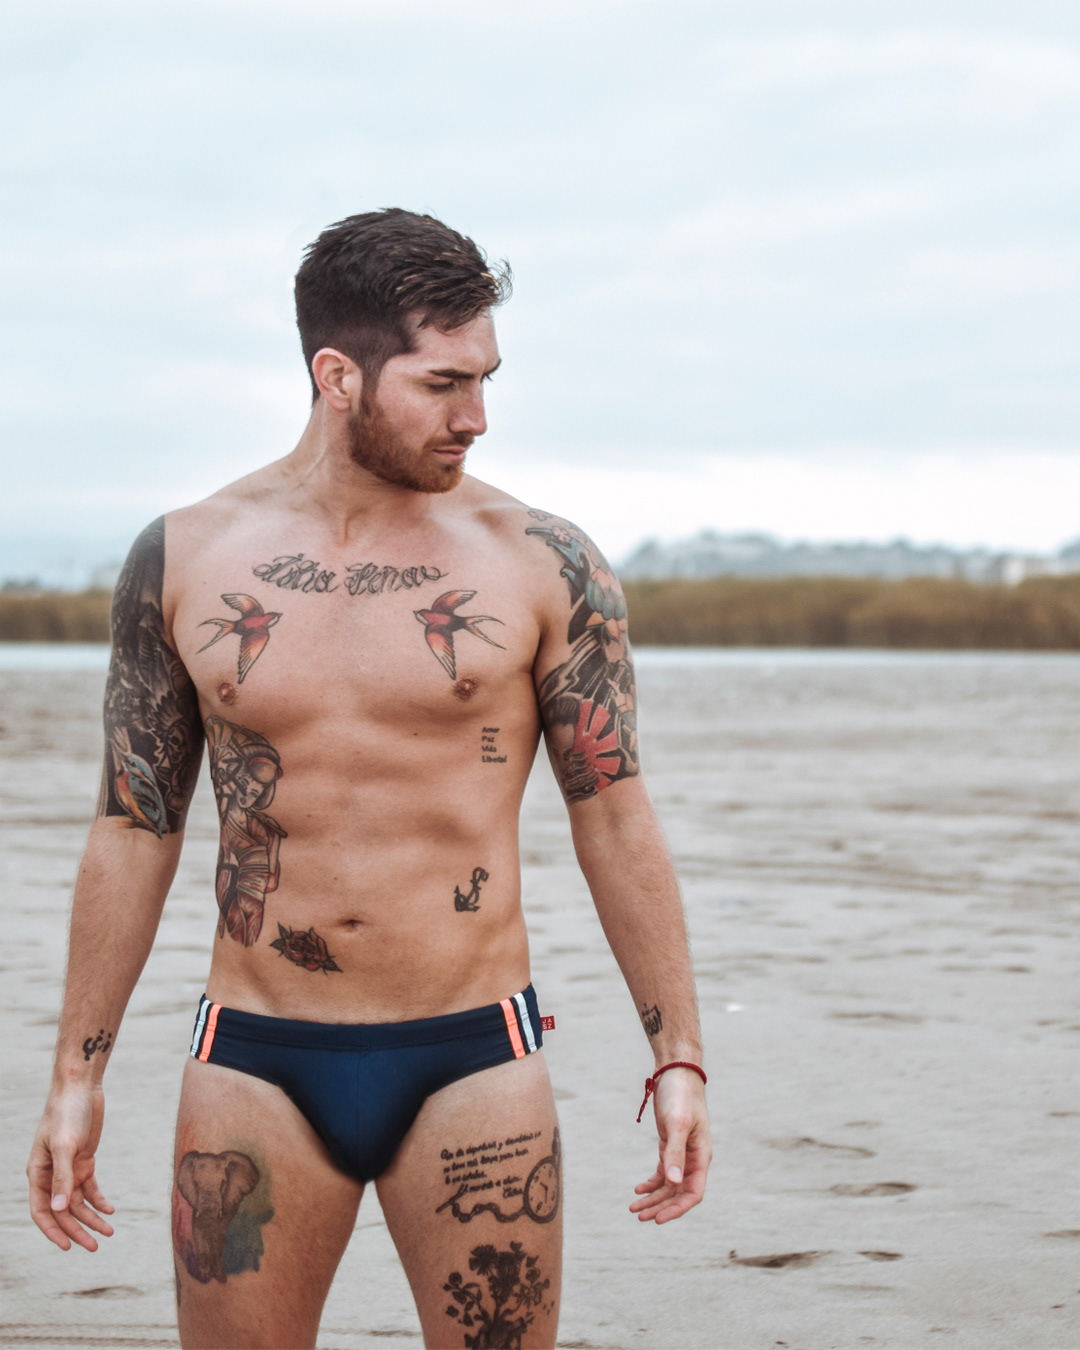 beach fitness fitnessman fitnessmodel malemodel Menstyle outdoorlife Speedo swimmer swimwear